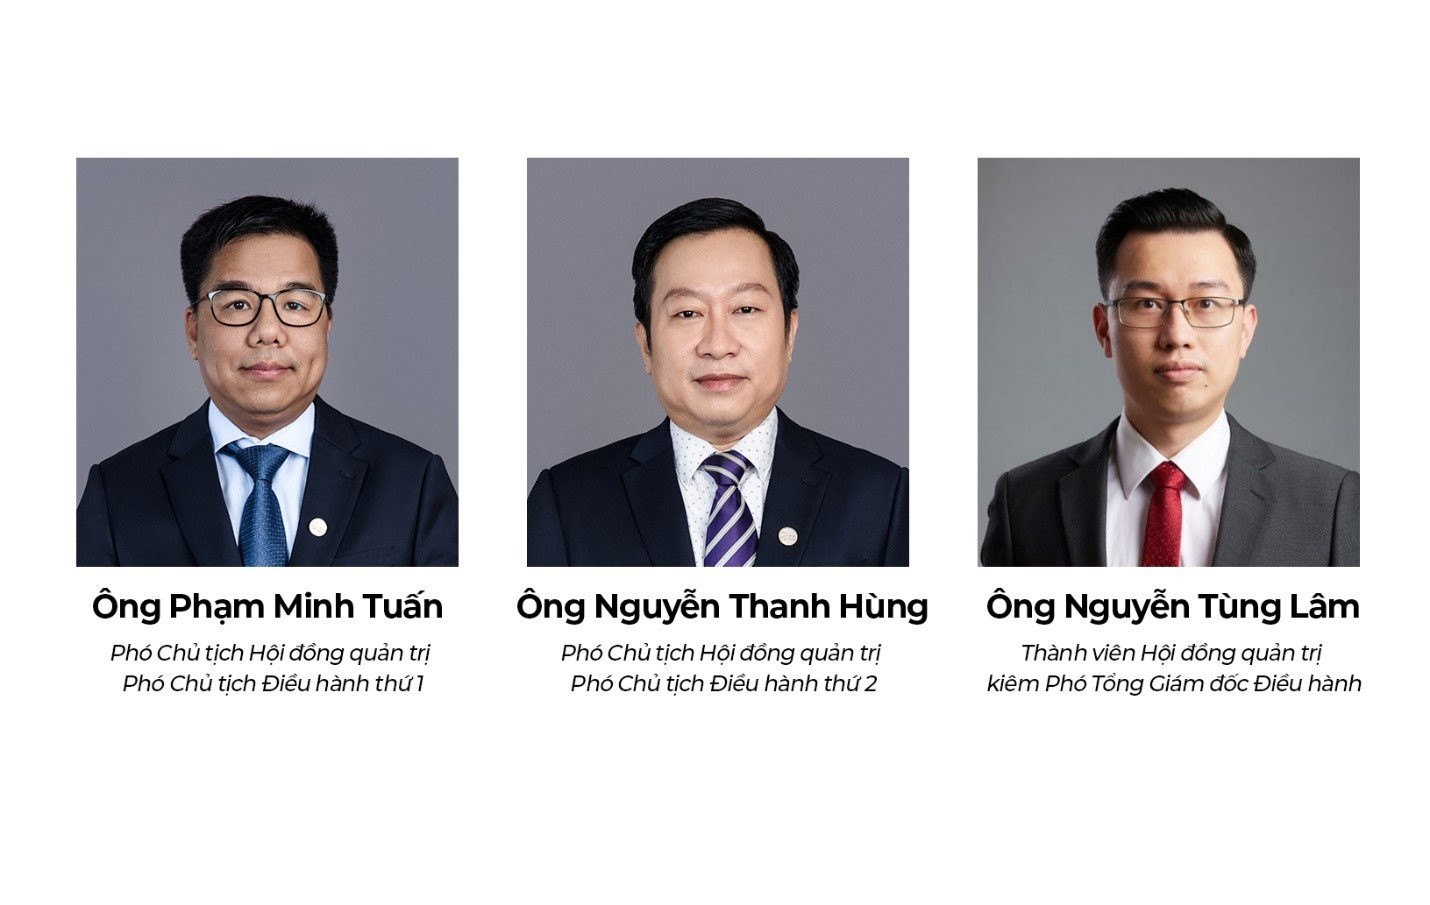 Ông Phạm Minh Tuấn và Nguyễn Thanh Hùng đảm nhiệm vị trí Phó Chủ tịch điều hành Hội đồng quản trị Bamboo Capital (BCG)- Ảnh 1.